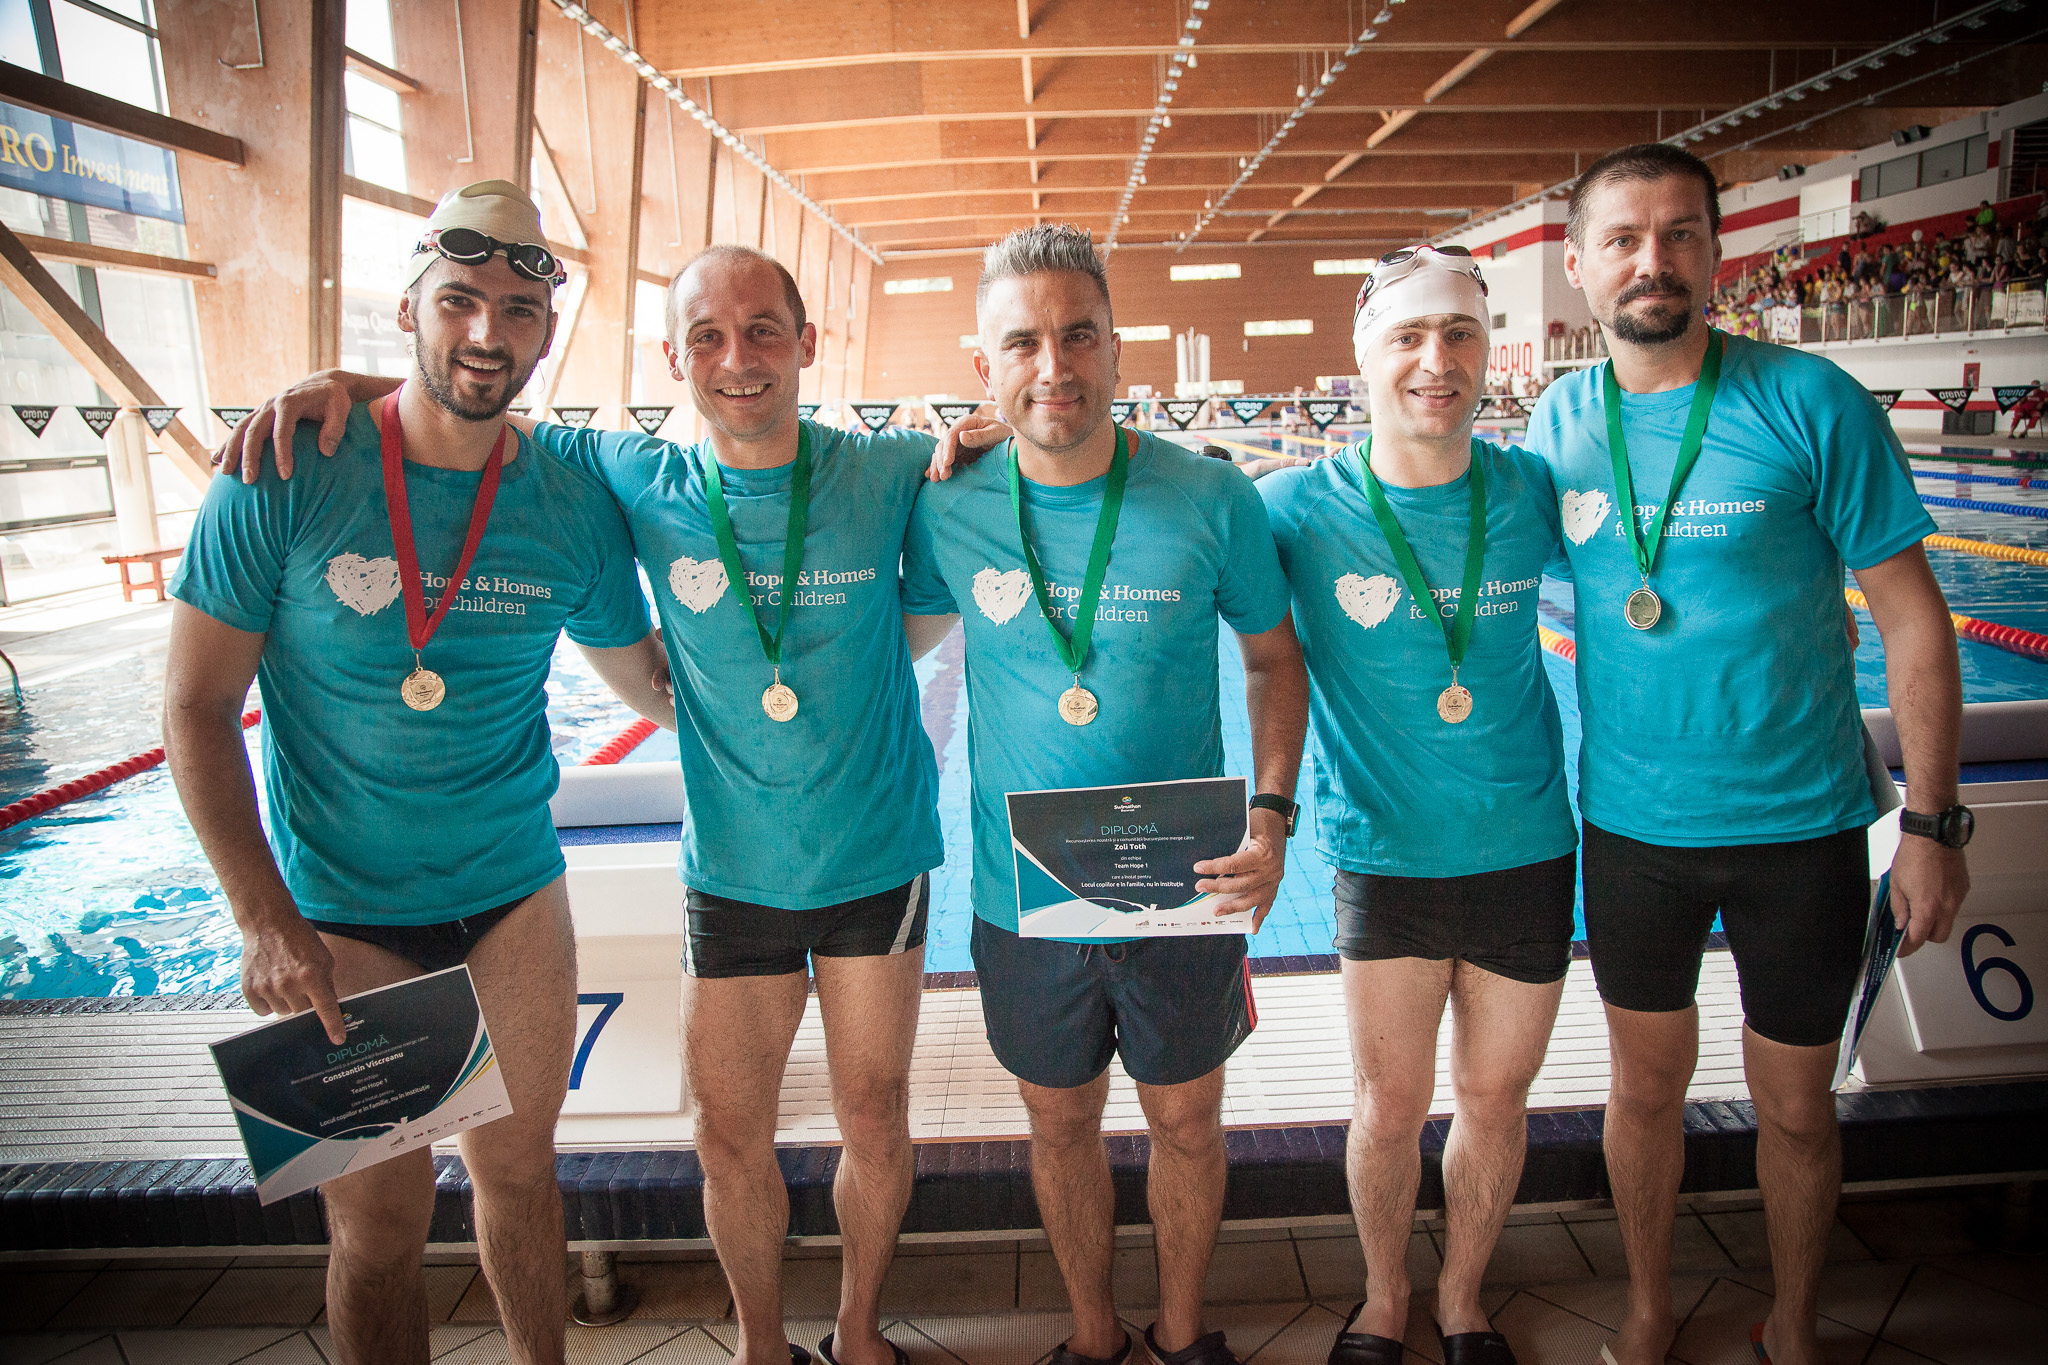 3 echipe de înotători “au făcut valuri” la Swimathon București pentru Hope and Homes for Children și au strâns bani pentru copiii aflați în pericol de abandon